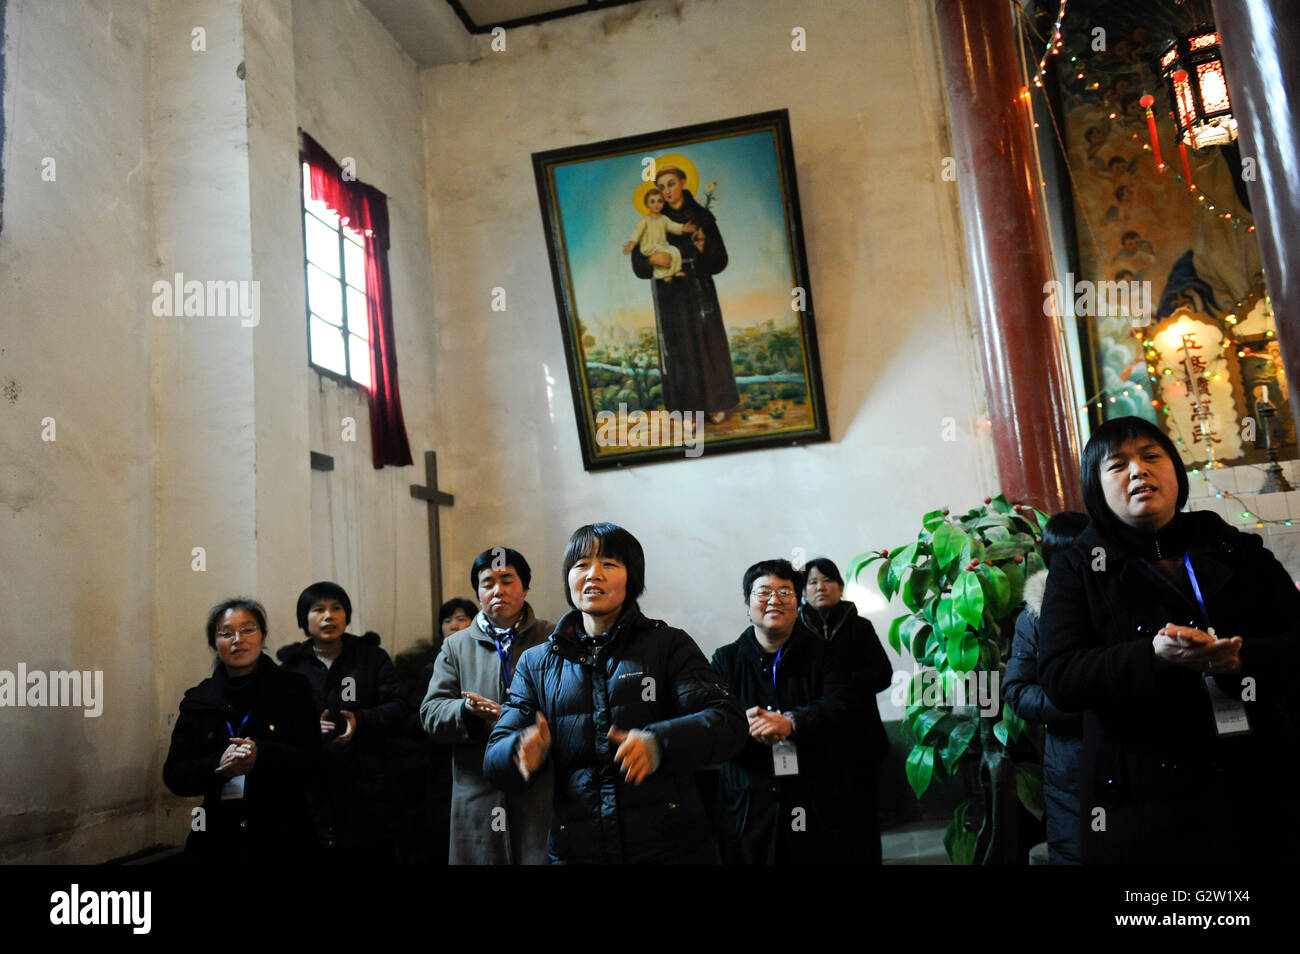 La Provincia china de Shaanxi en la iglesia católica, conferencia sobre misión Tongyuan / CHINA Provinz Shaanxi , katholische Kirche en Tongyuan, Missionskonferenz Foto de stock